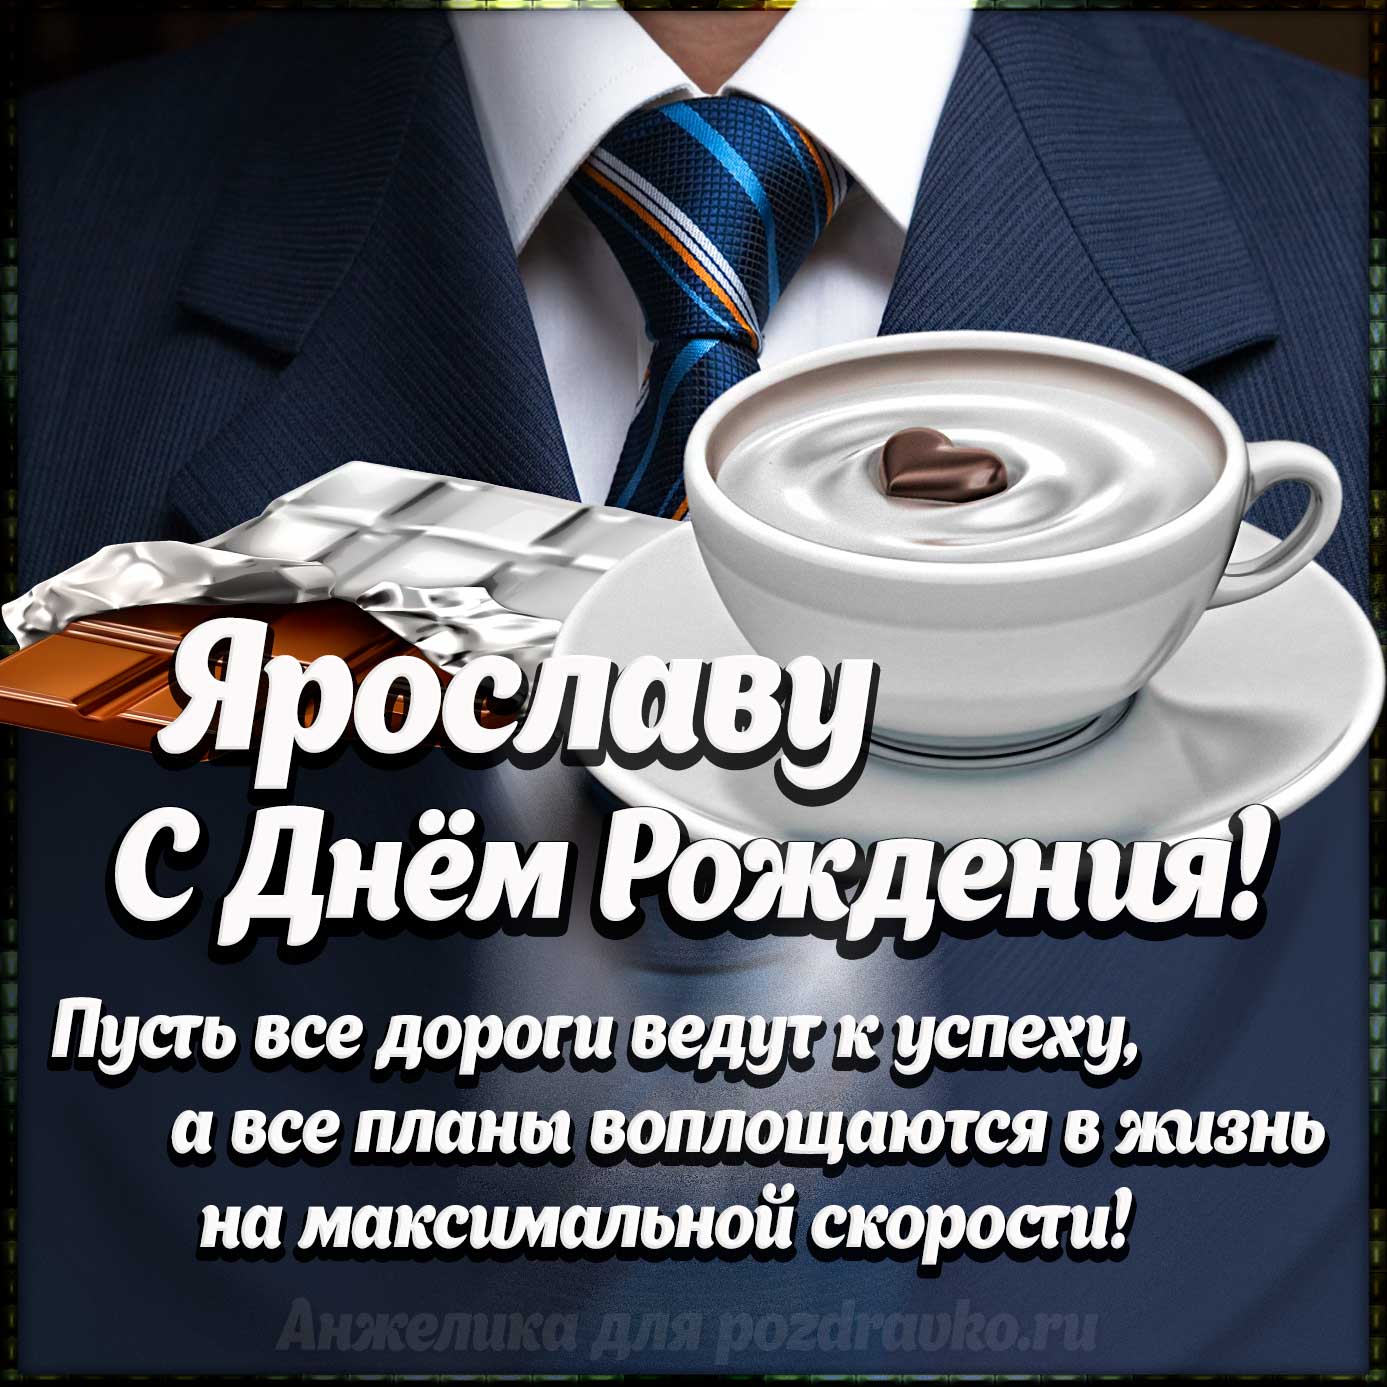 Открытка - Ярославу с Днем Рождения с галстуком, кофе и пожеланием. Скачать бесплатно или отправить картинку.